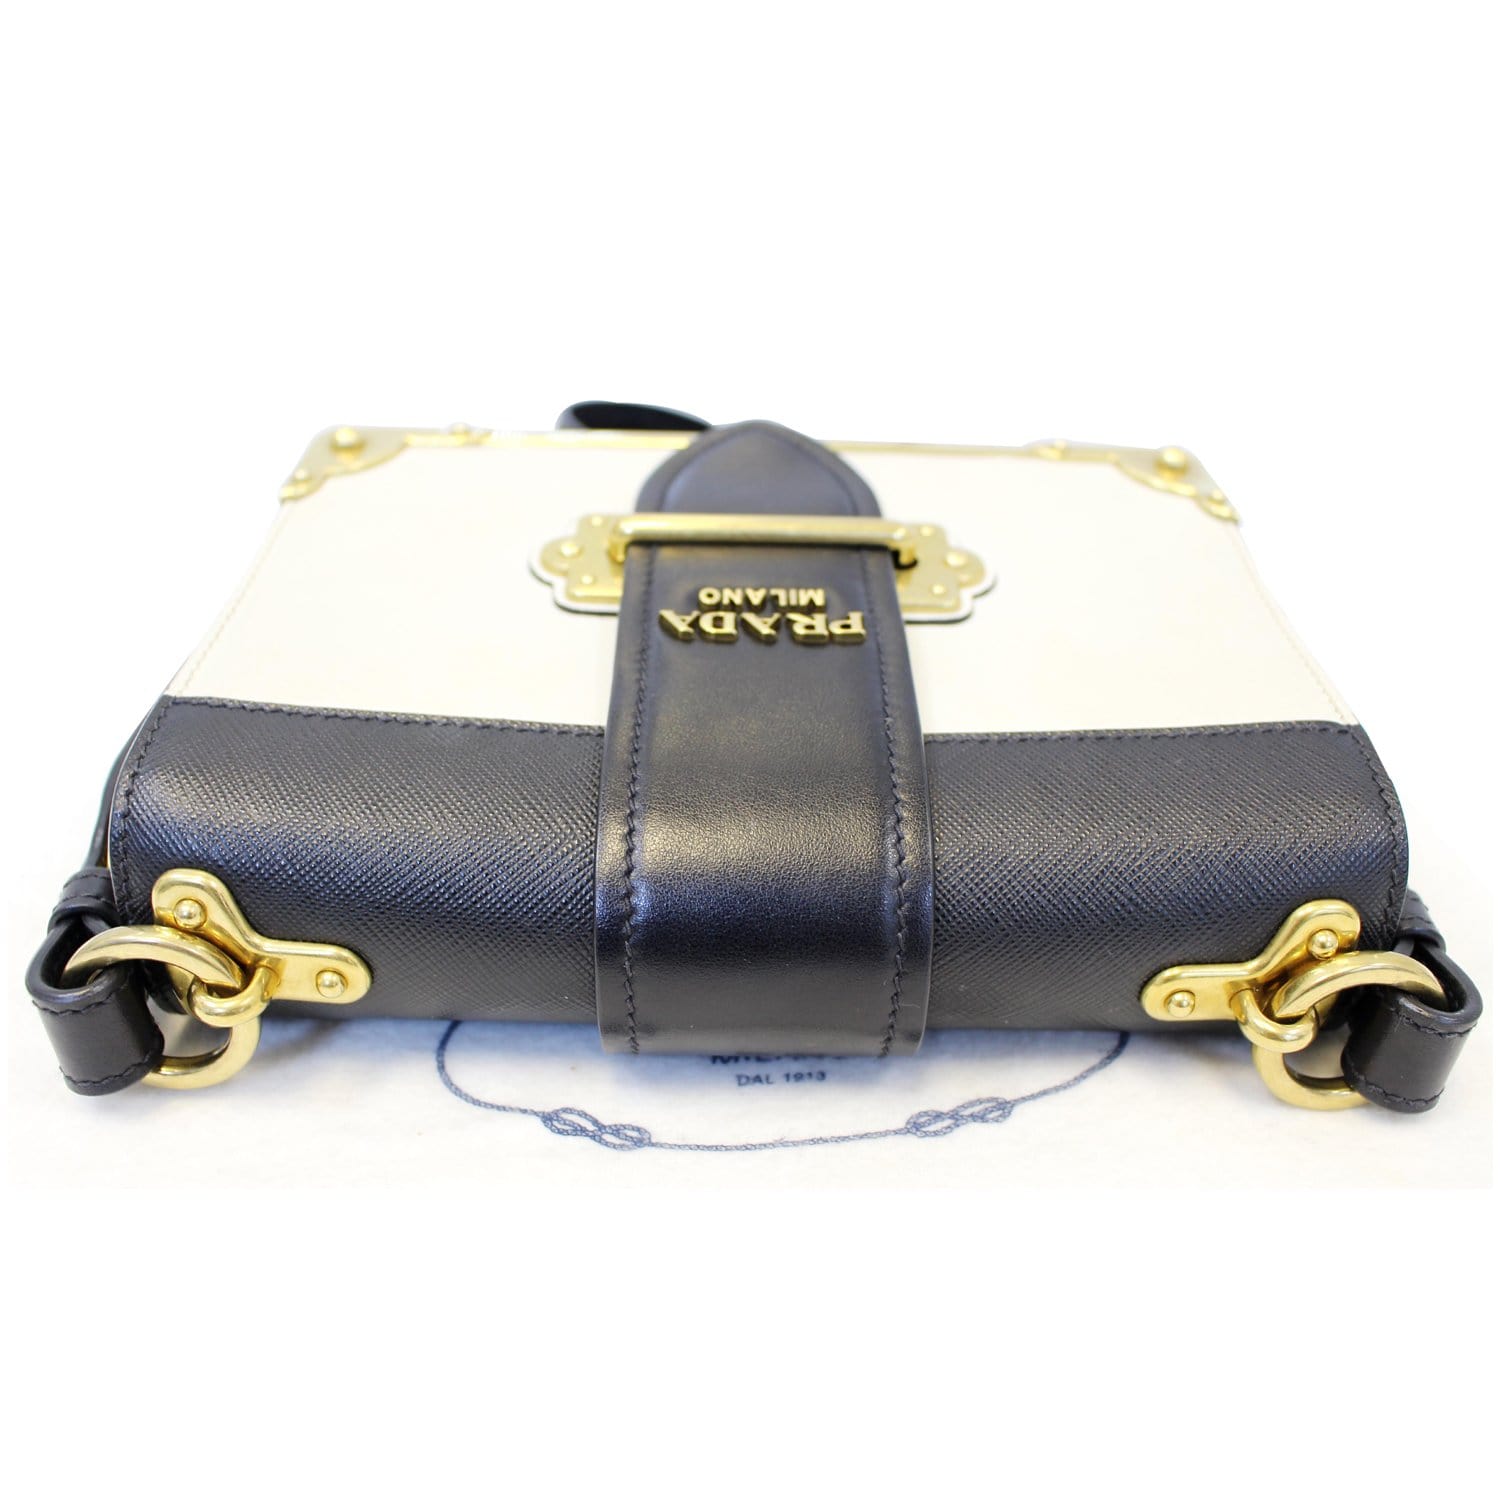 PRADA Cahier City 1BD045 Blue/Black Calfskin Saffiano Shoulder Bag